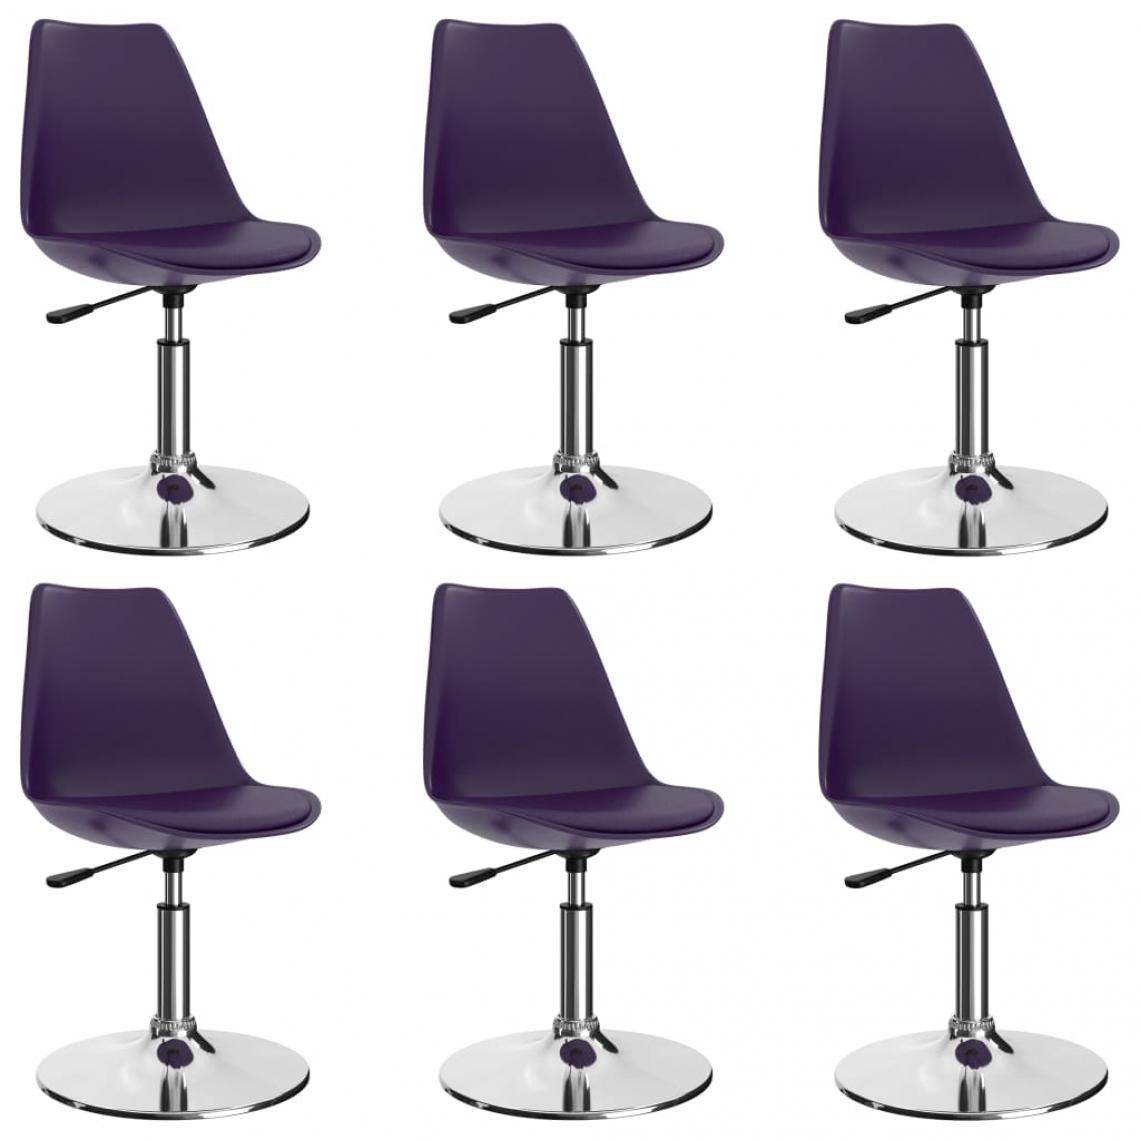 Decoshop26 - Lot de 6 chaises de salle à manger cuisine pivotantes design moderne similicuir lilas CDS022760 - Chaises